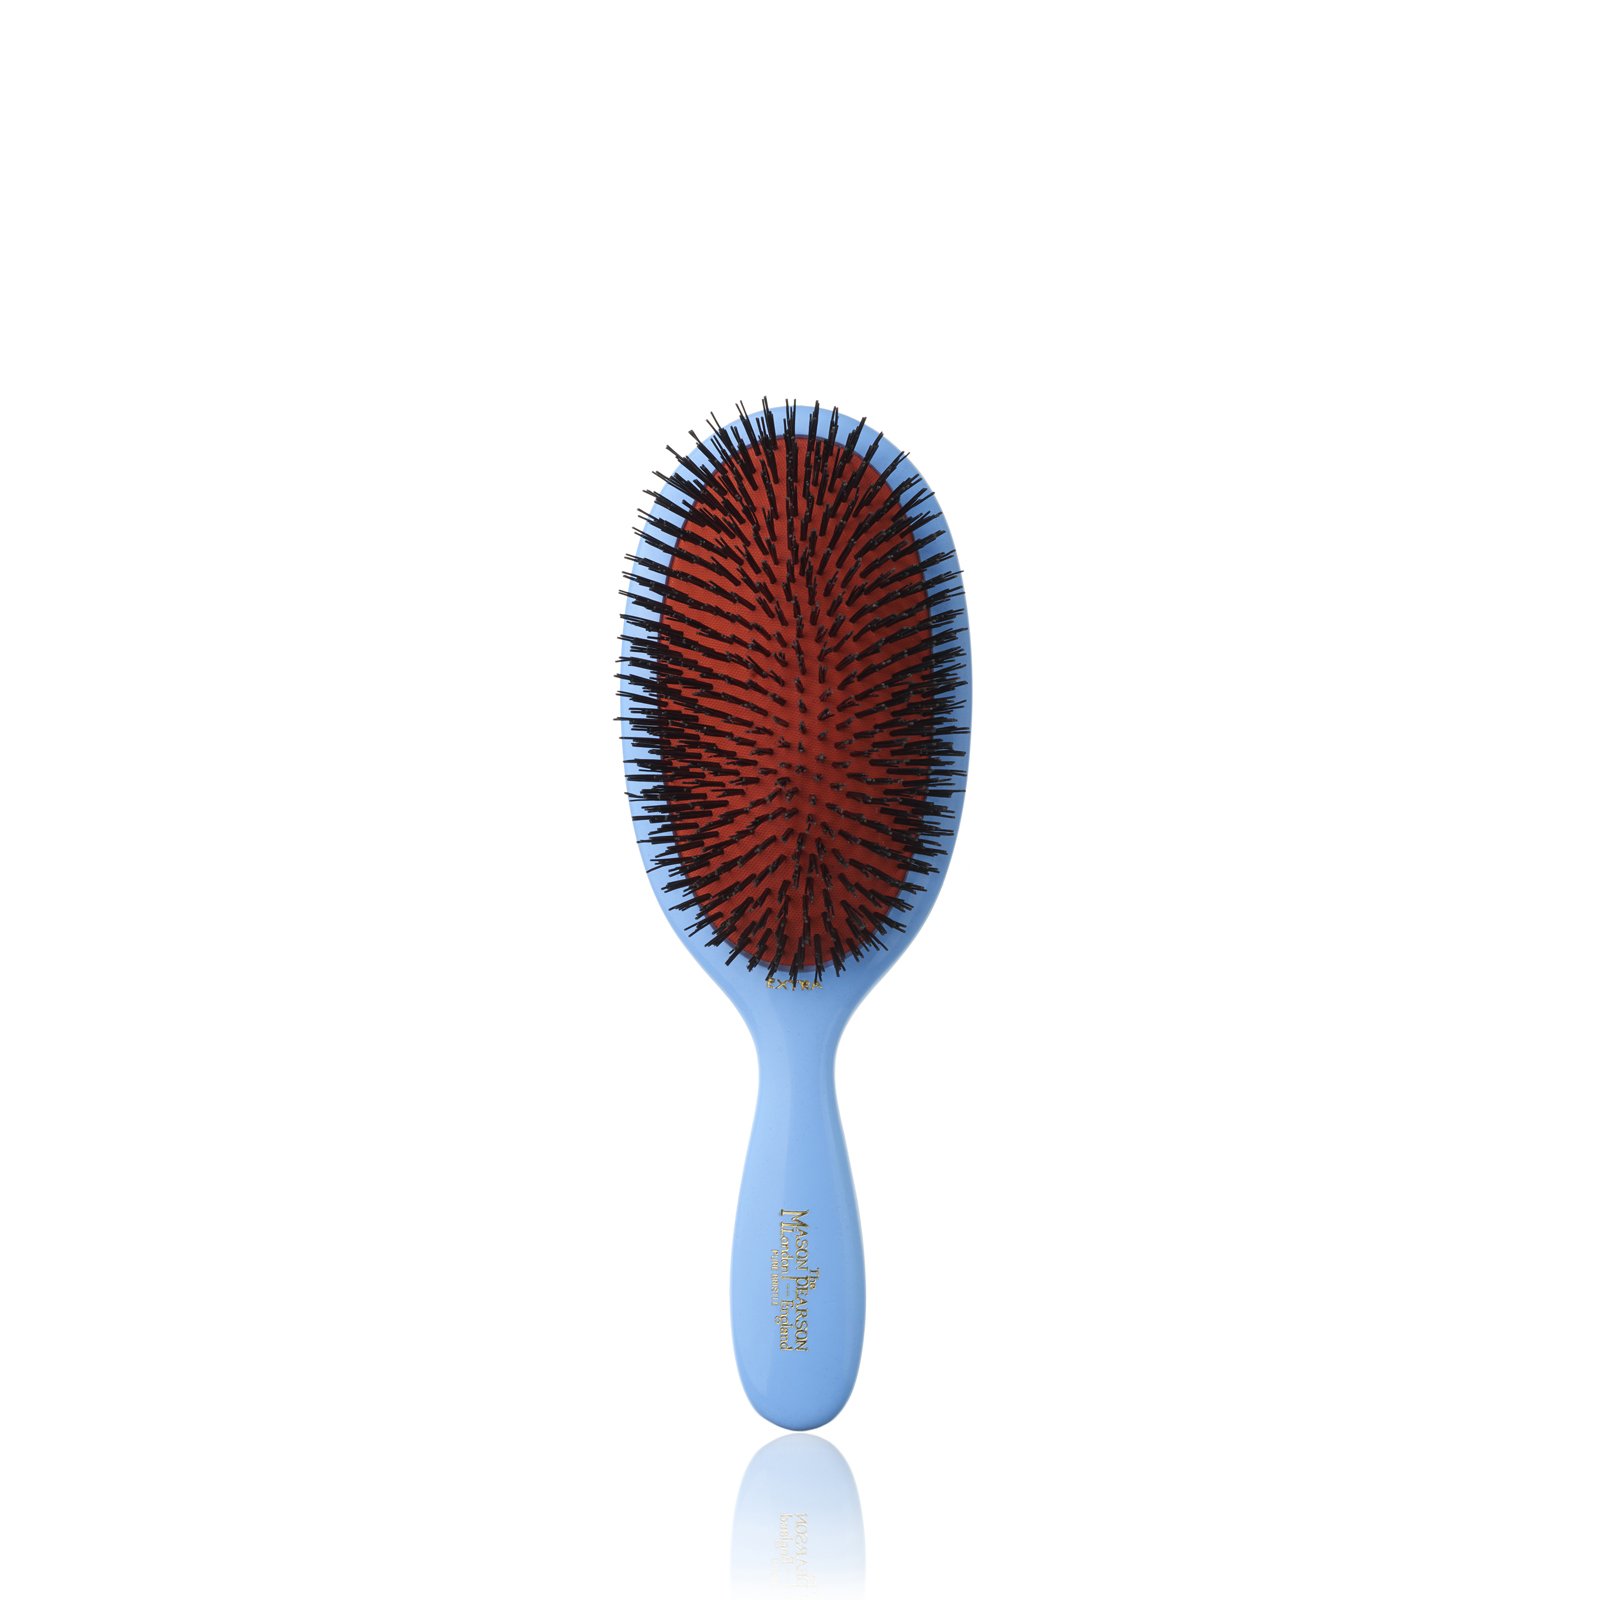 B2 Small Extra Hairbrush from Mason Pearson (Blue) 